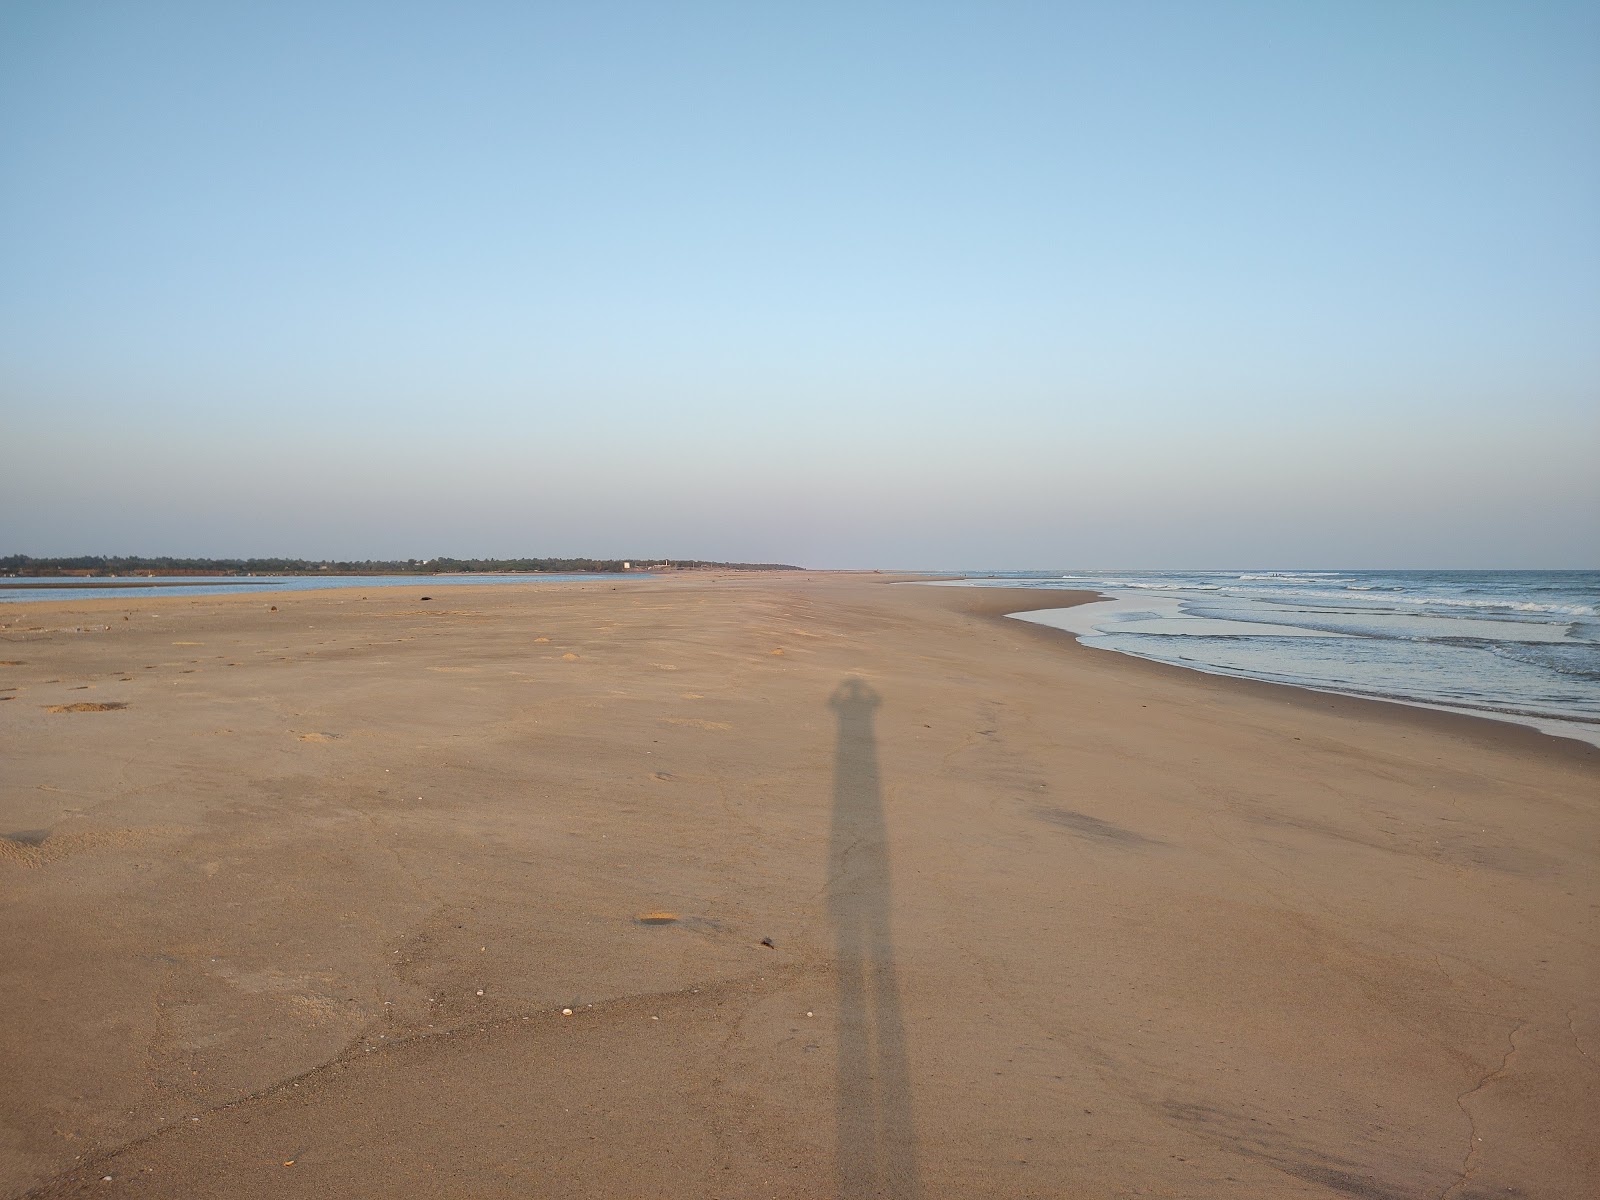 Fotografie cu PD Palem Beach cu o suprafață de nisip strălucitor